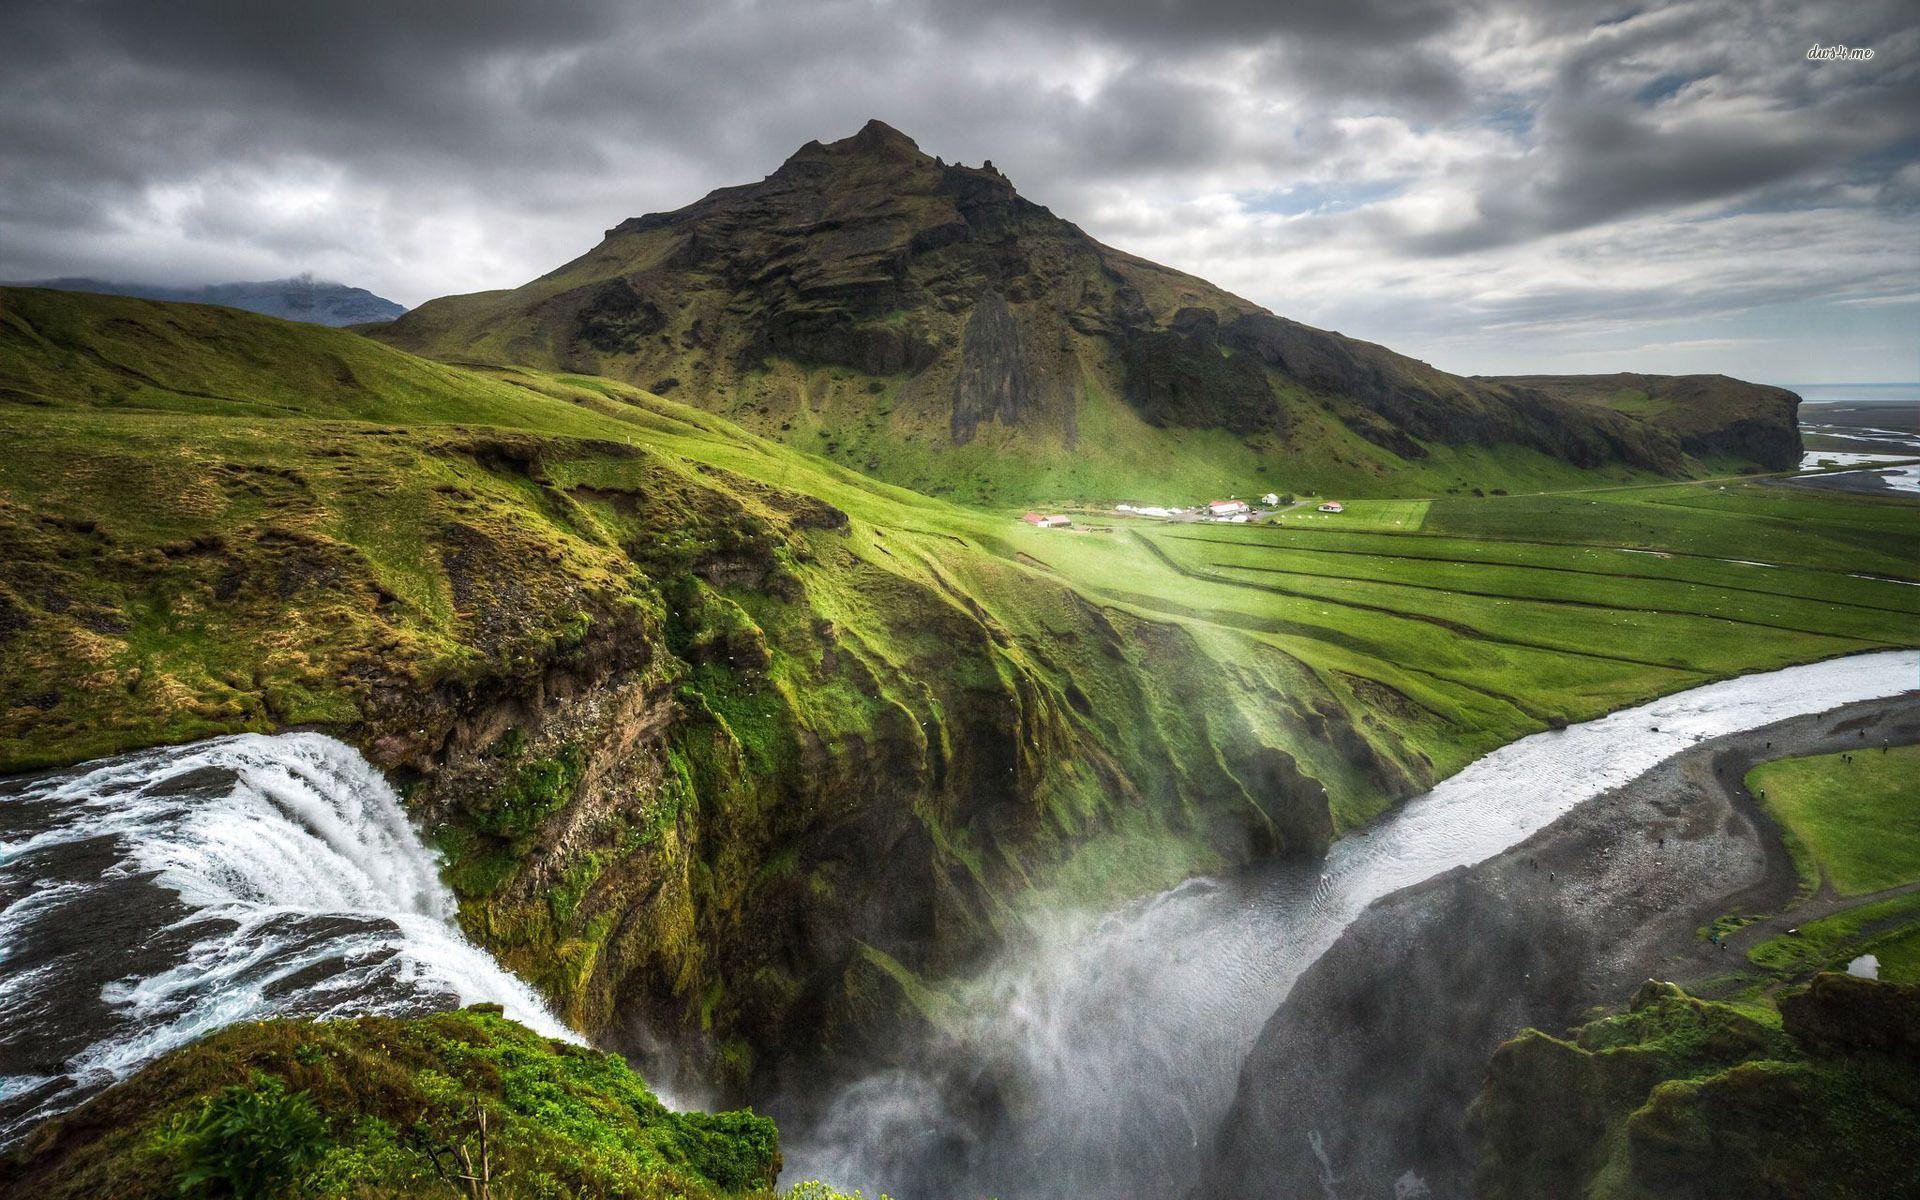 Với những hình nền đầy màu sắc và sống động, tải xuống miễn phí những bức ảnh Iceland sẽ là một trải nghiệm tuyệt vời cho bạn. Bạn có thể chọn lựa những bức ảnh yêu thích, tải về điện thoại hay máy tính để bàn để làm hình nền, hoặc làm bức trang trí cho căn phòng của mình.